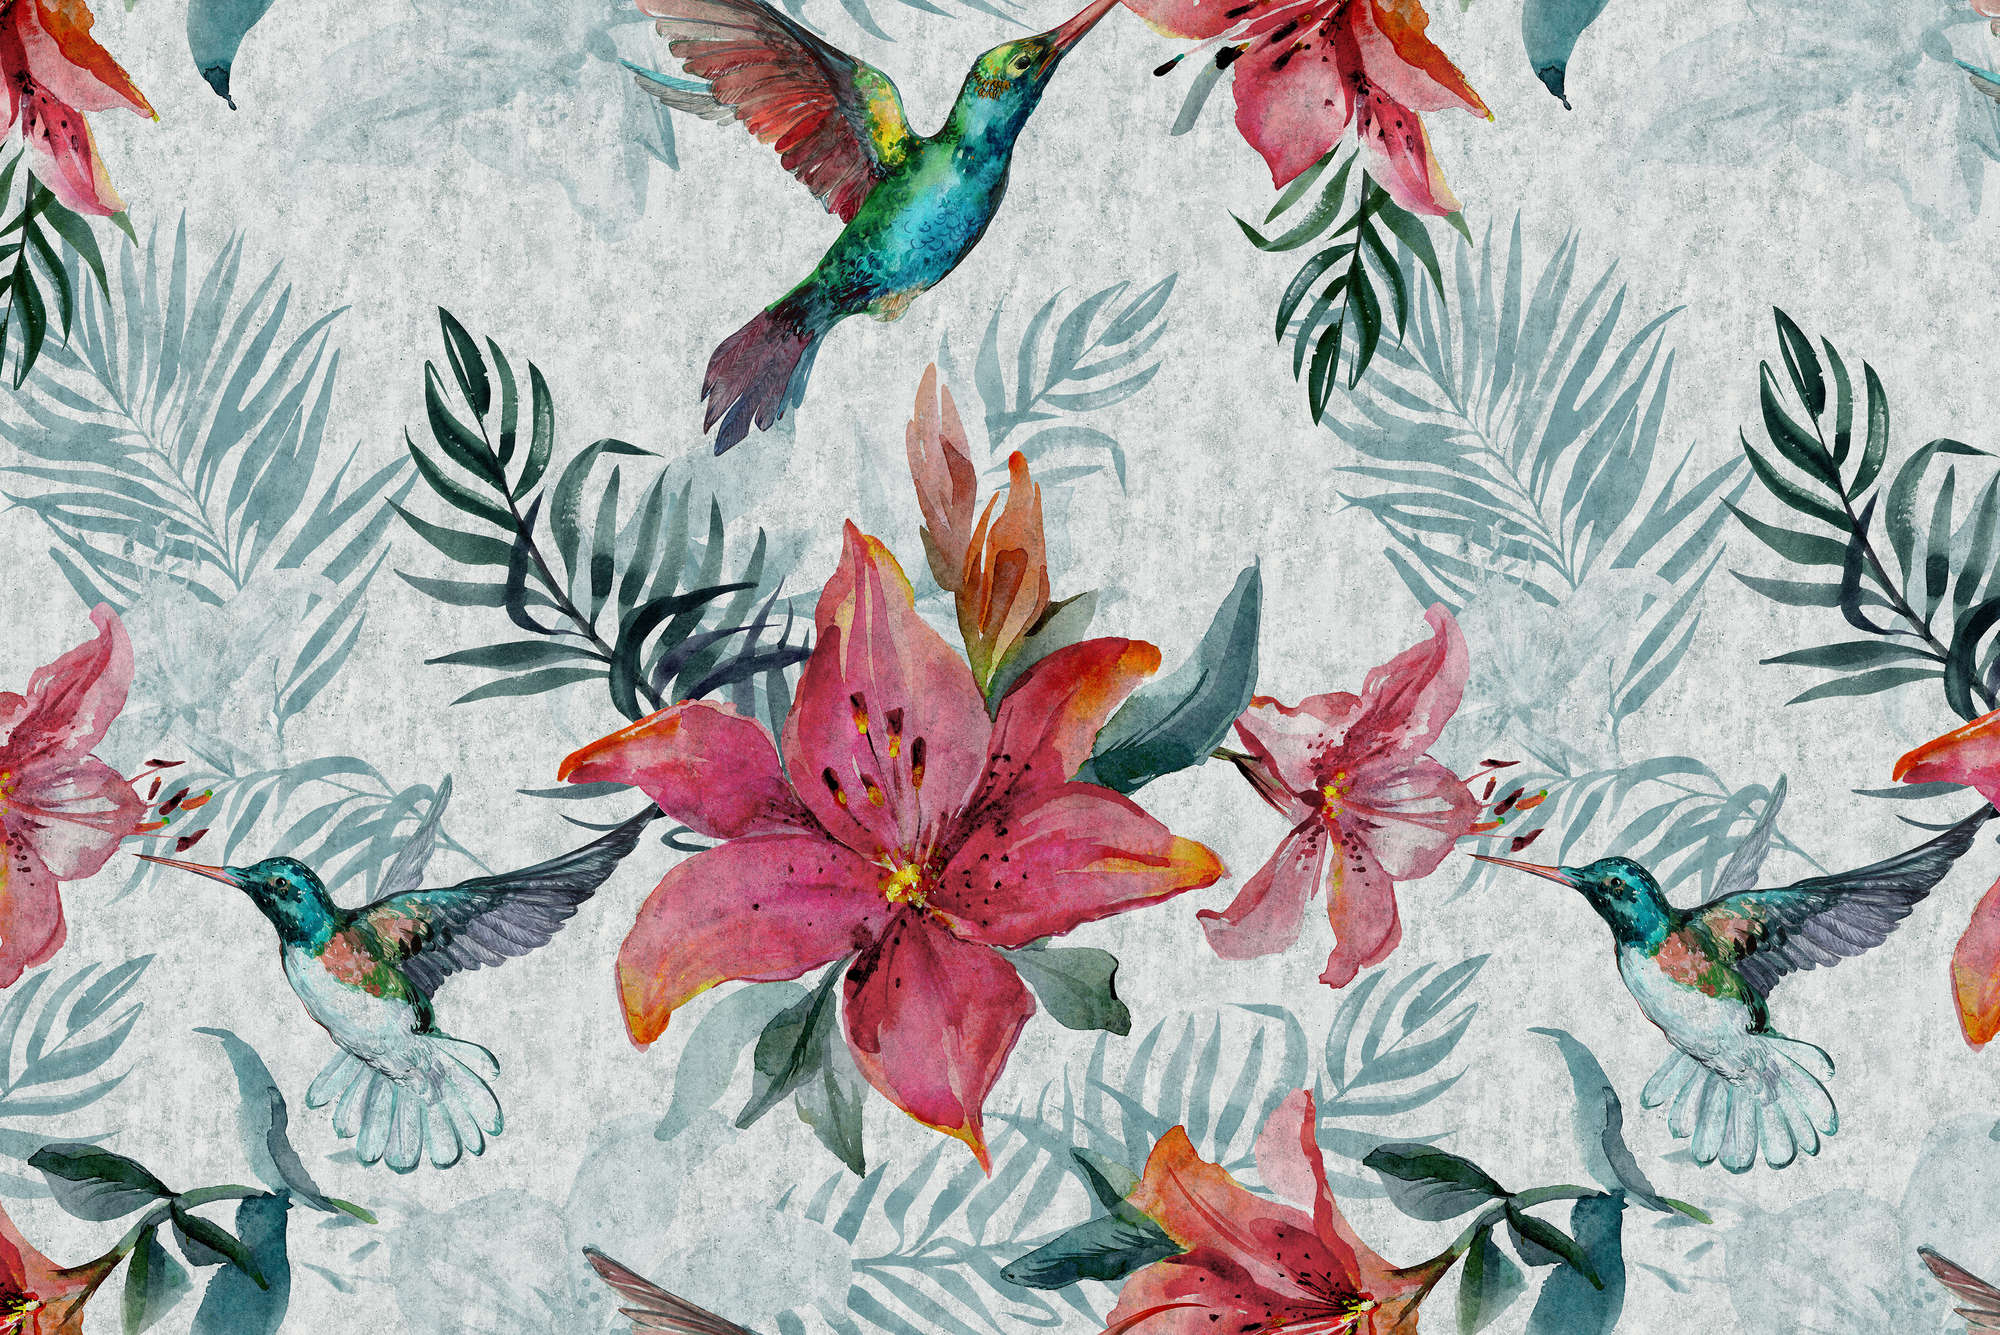             Papel pintado gráfico Flores de la selva con pájaros en tejido no tejido liso mate
        